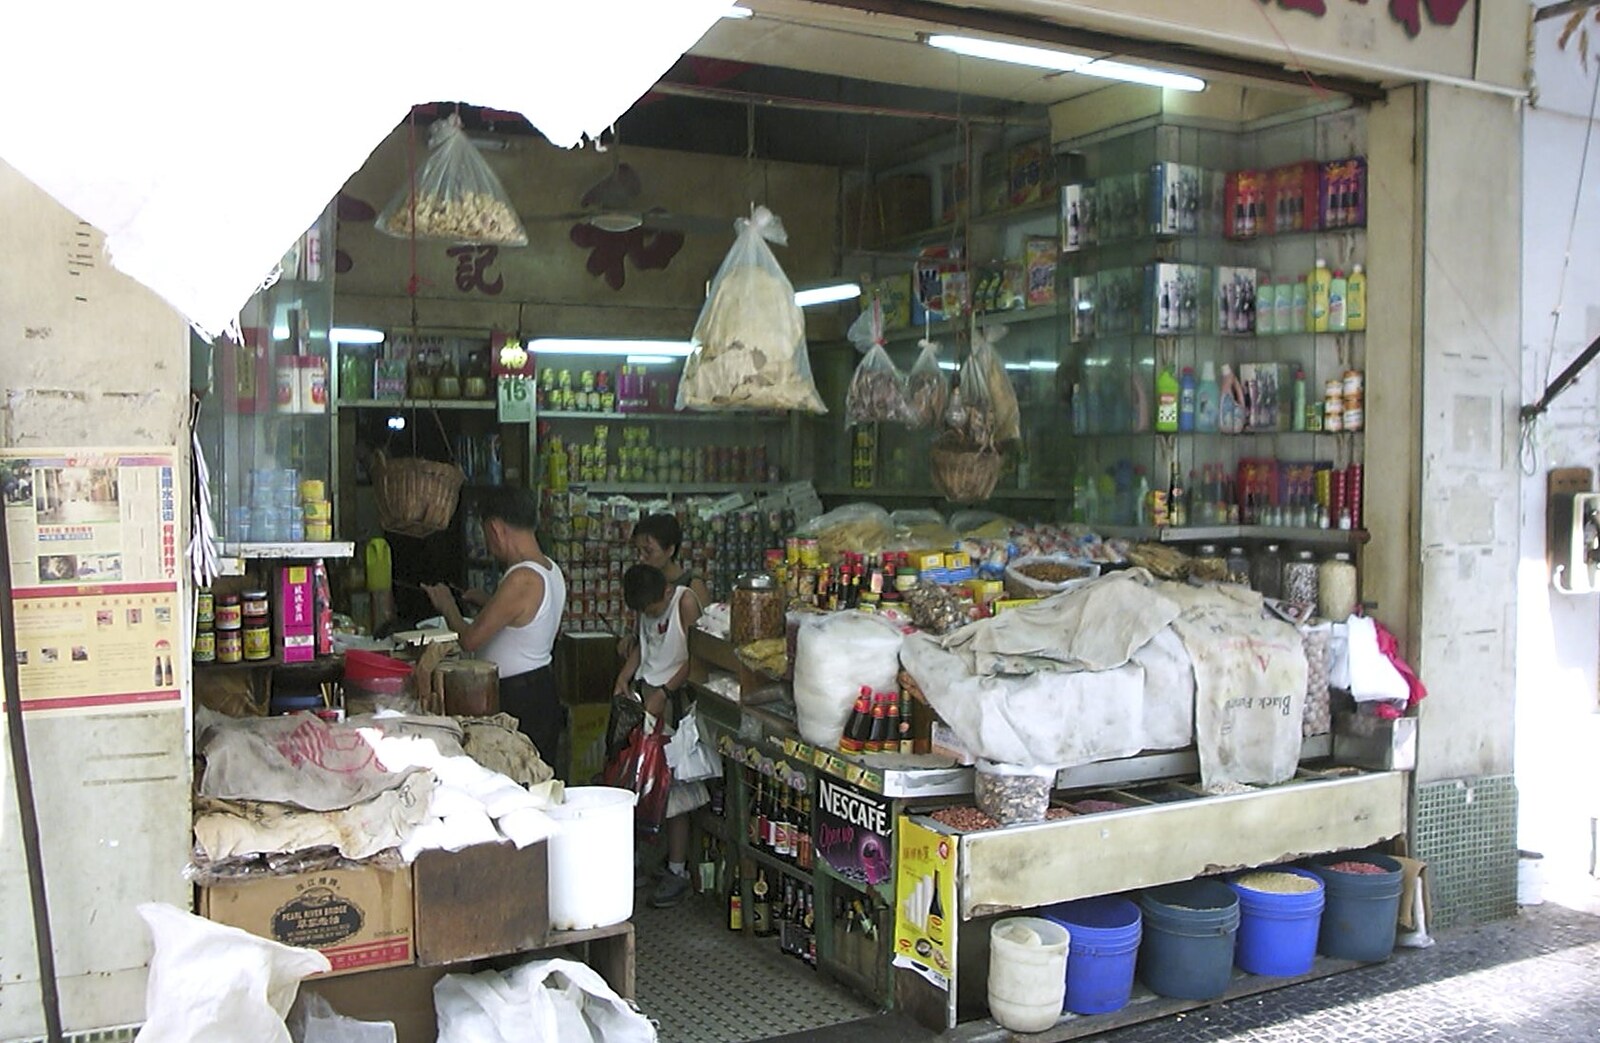 A Day Trip to Macau, China - 16th August 2001: A random shop